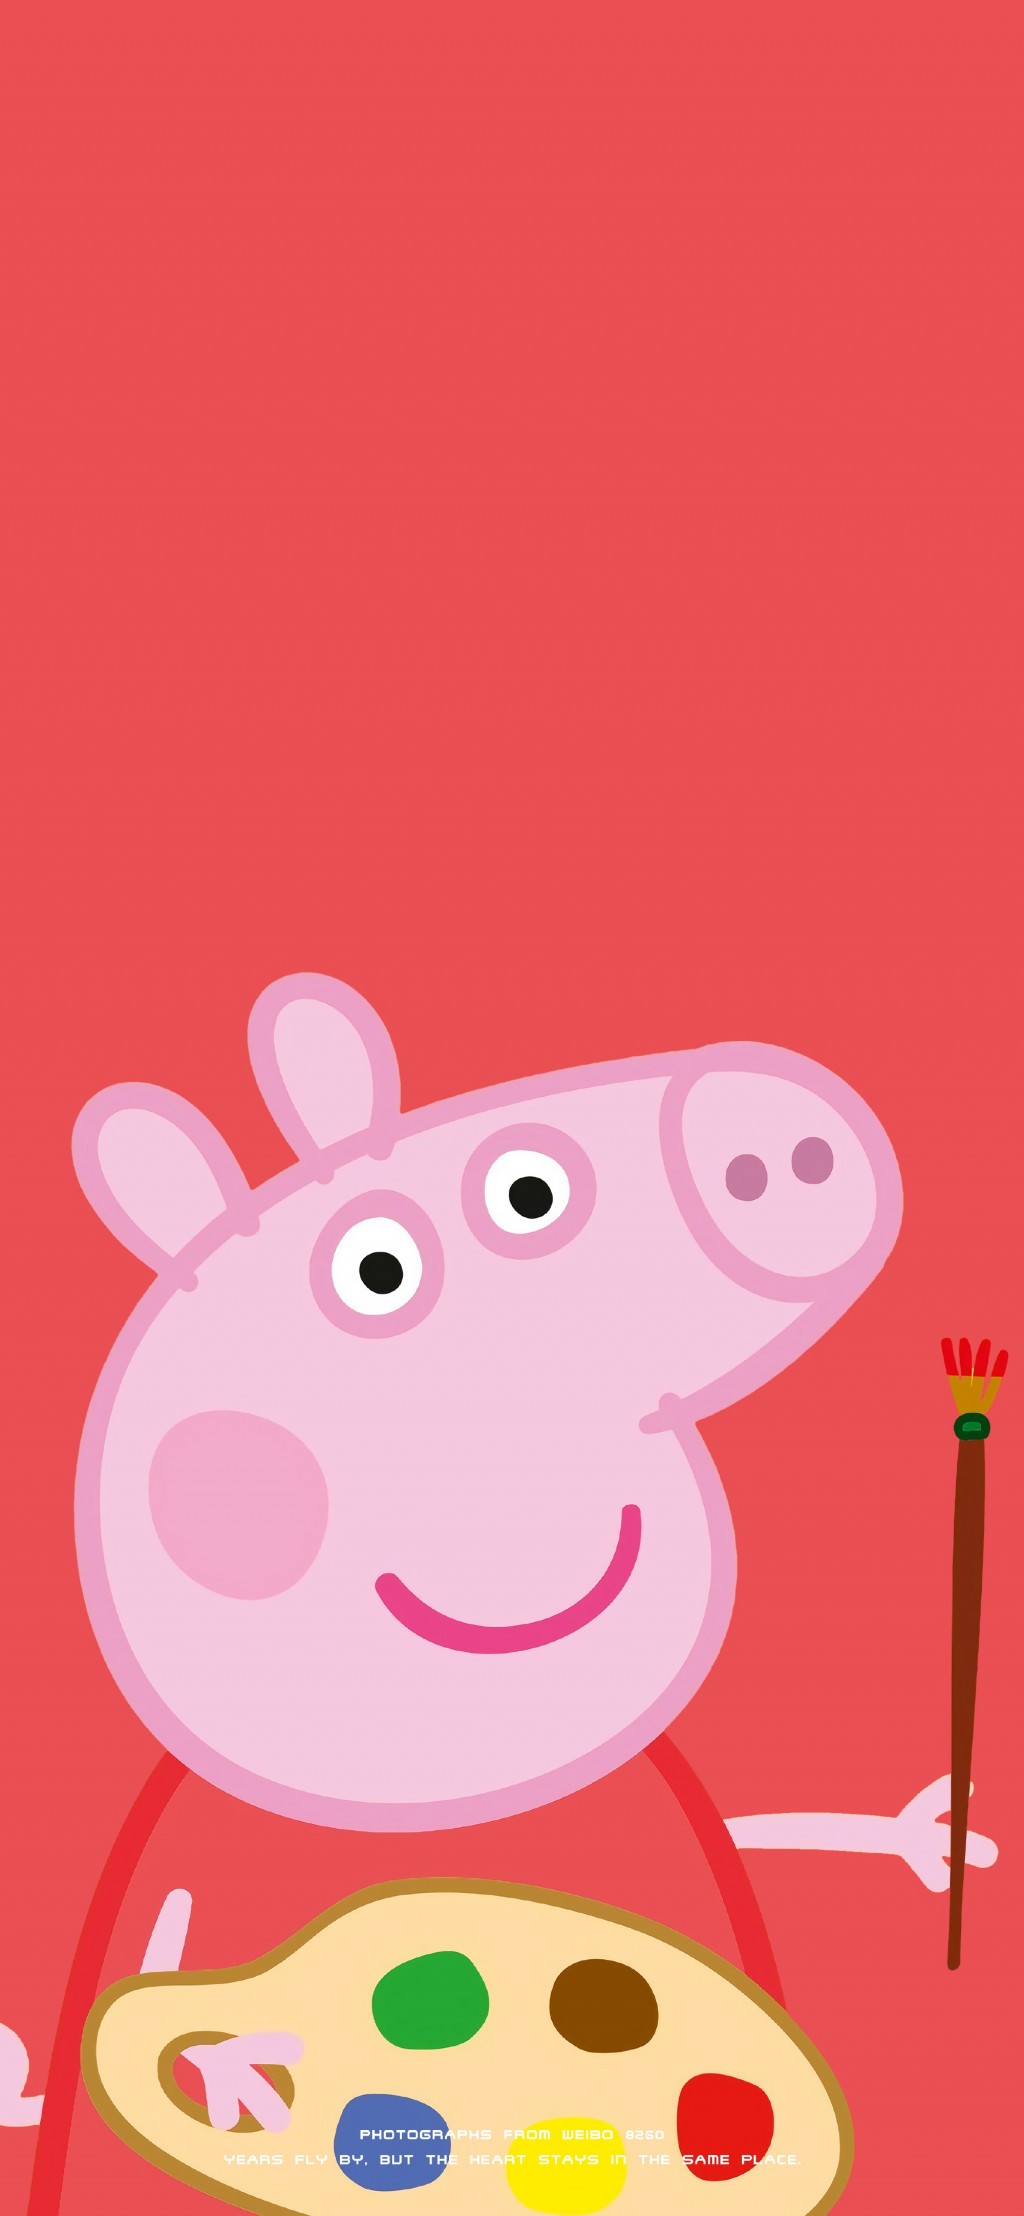 小猪佩奇可爱卡通手机壁纸